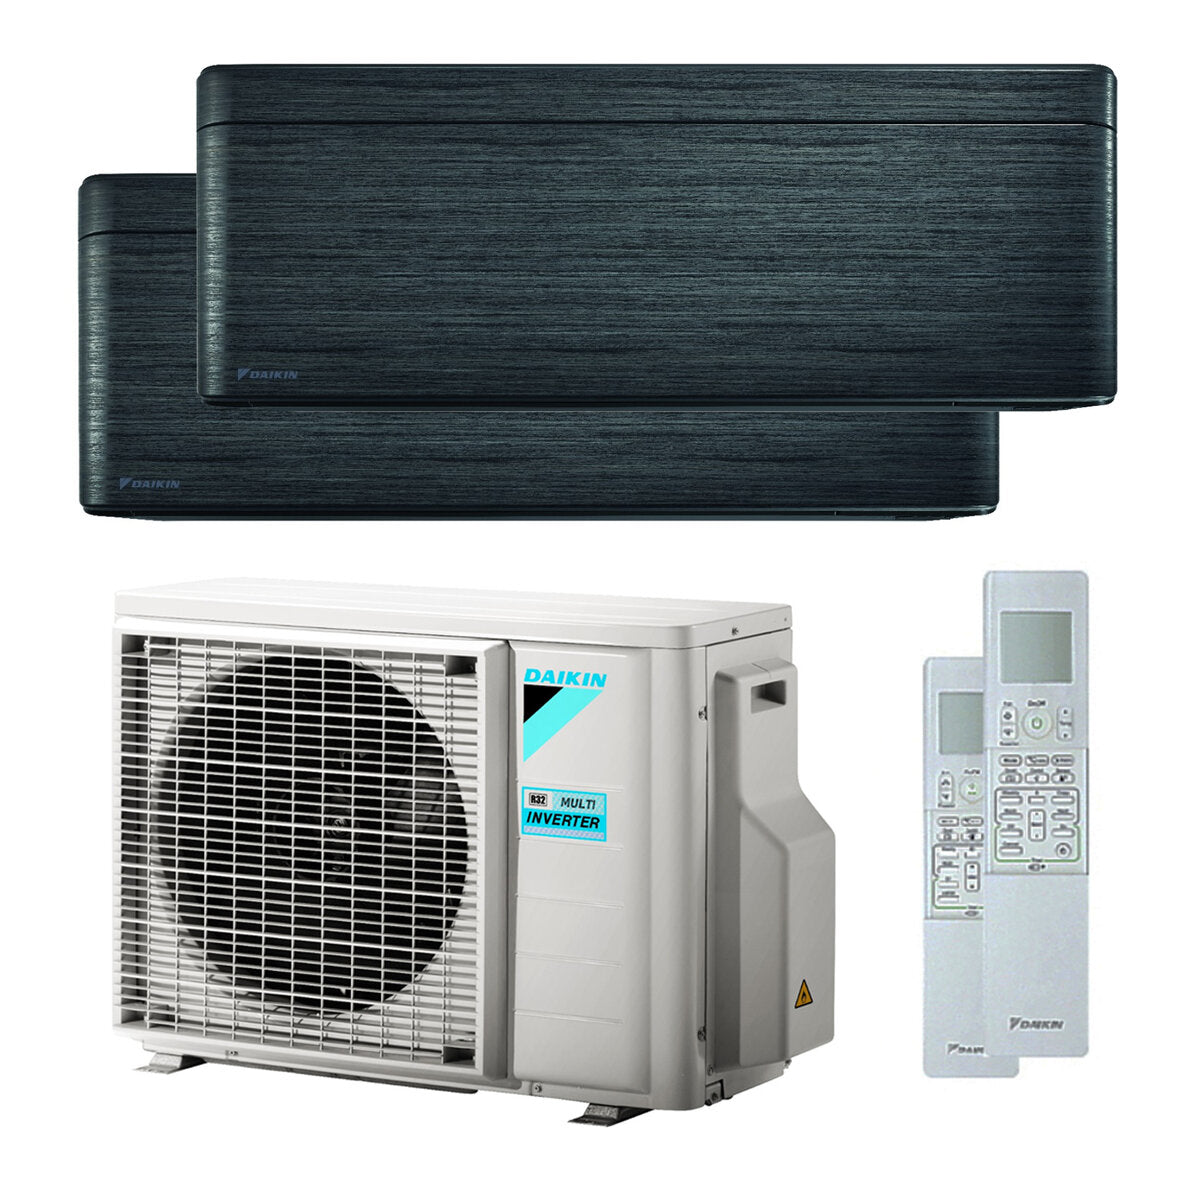 Daikin Stylish dual split air conditioner 7000 + 9000 BTU inverter A +++ wifi outdoor unit 4.0 kW